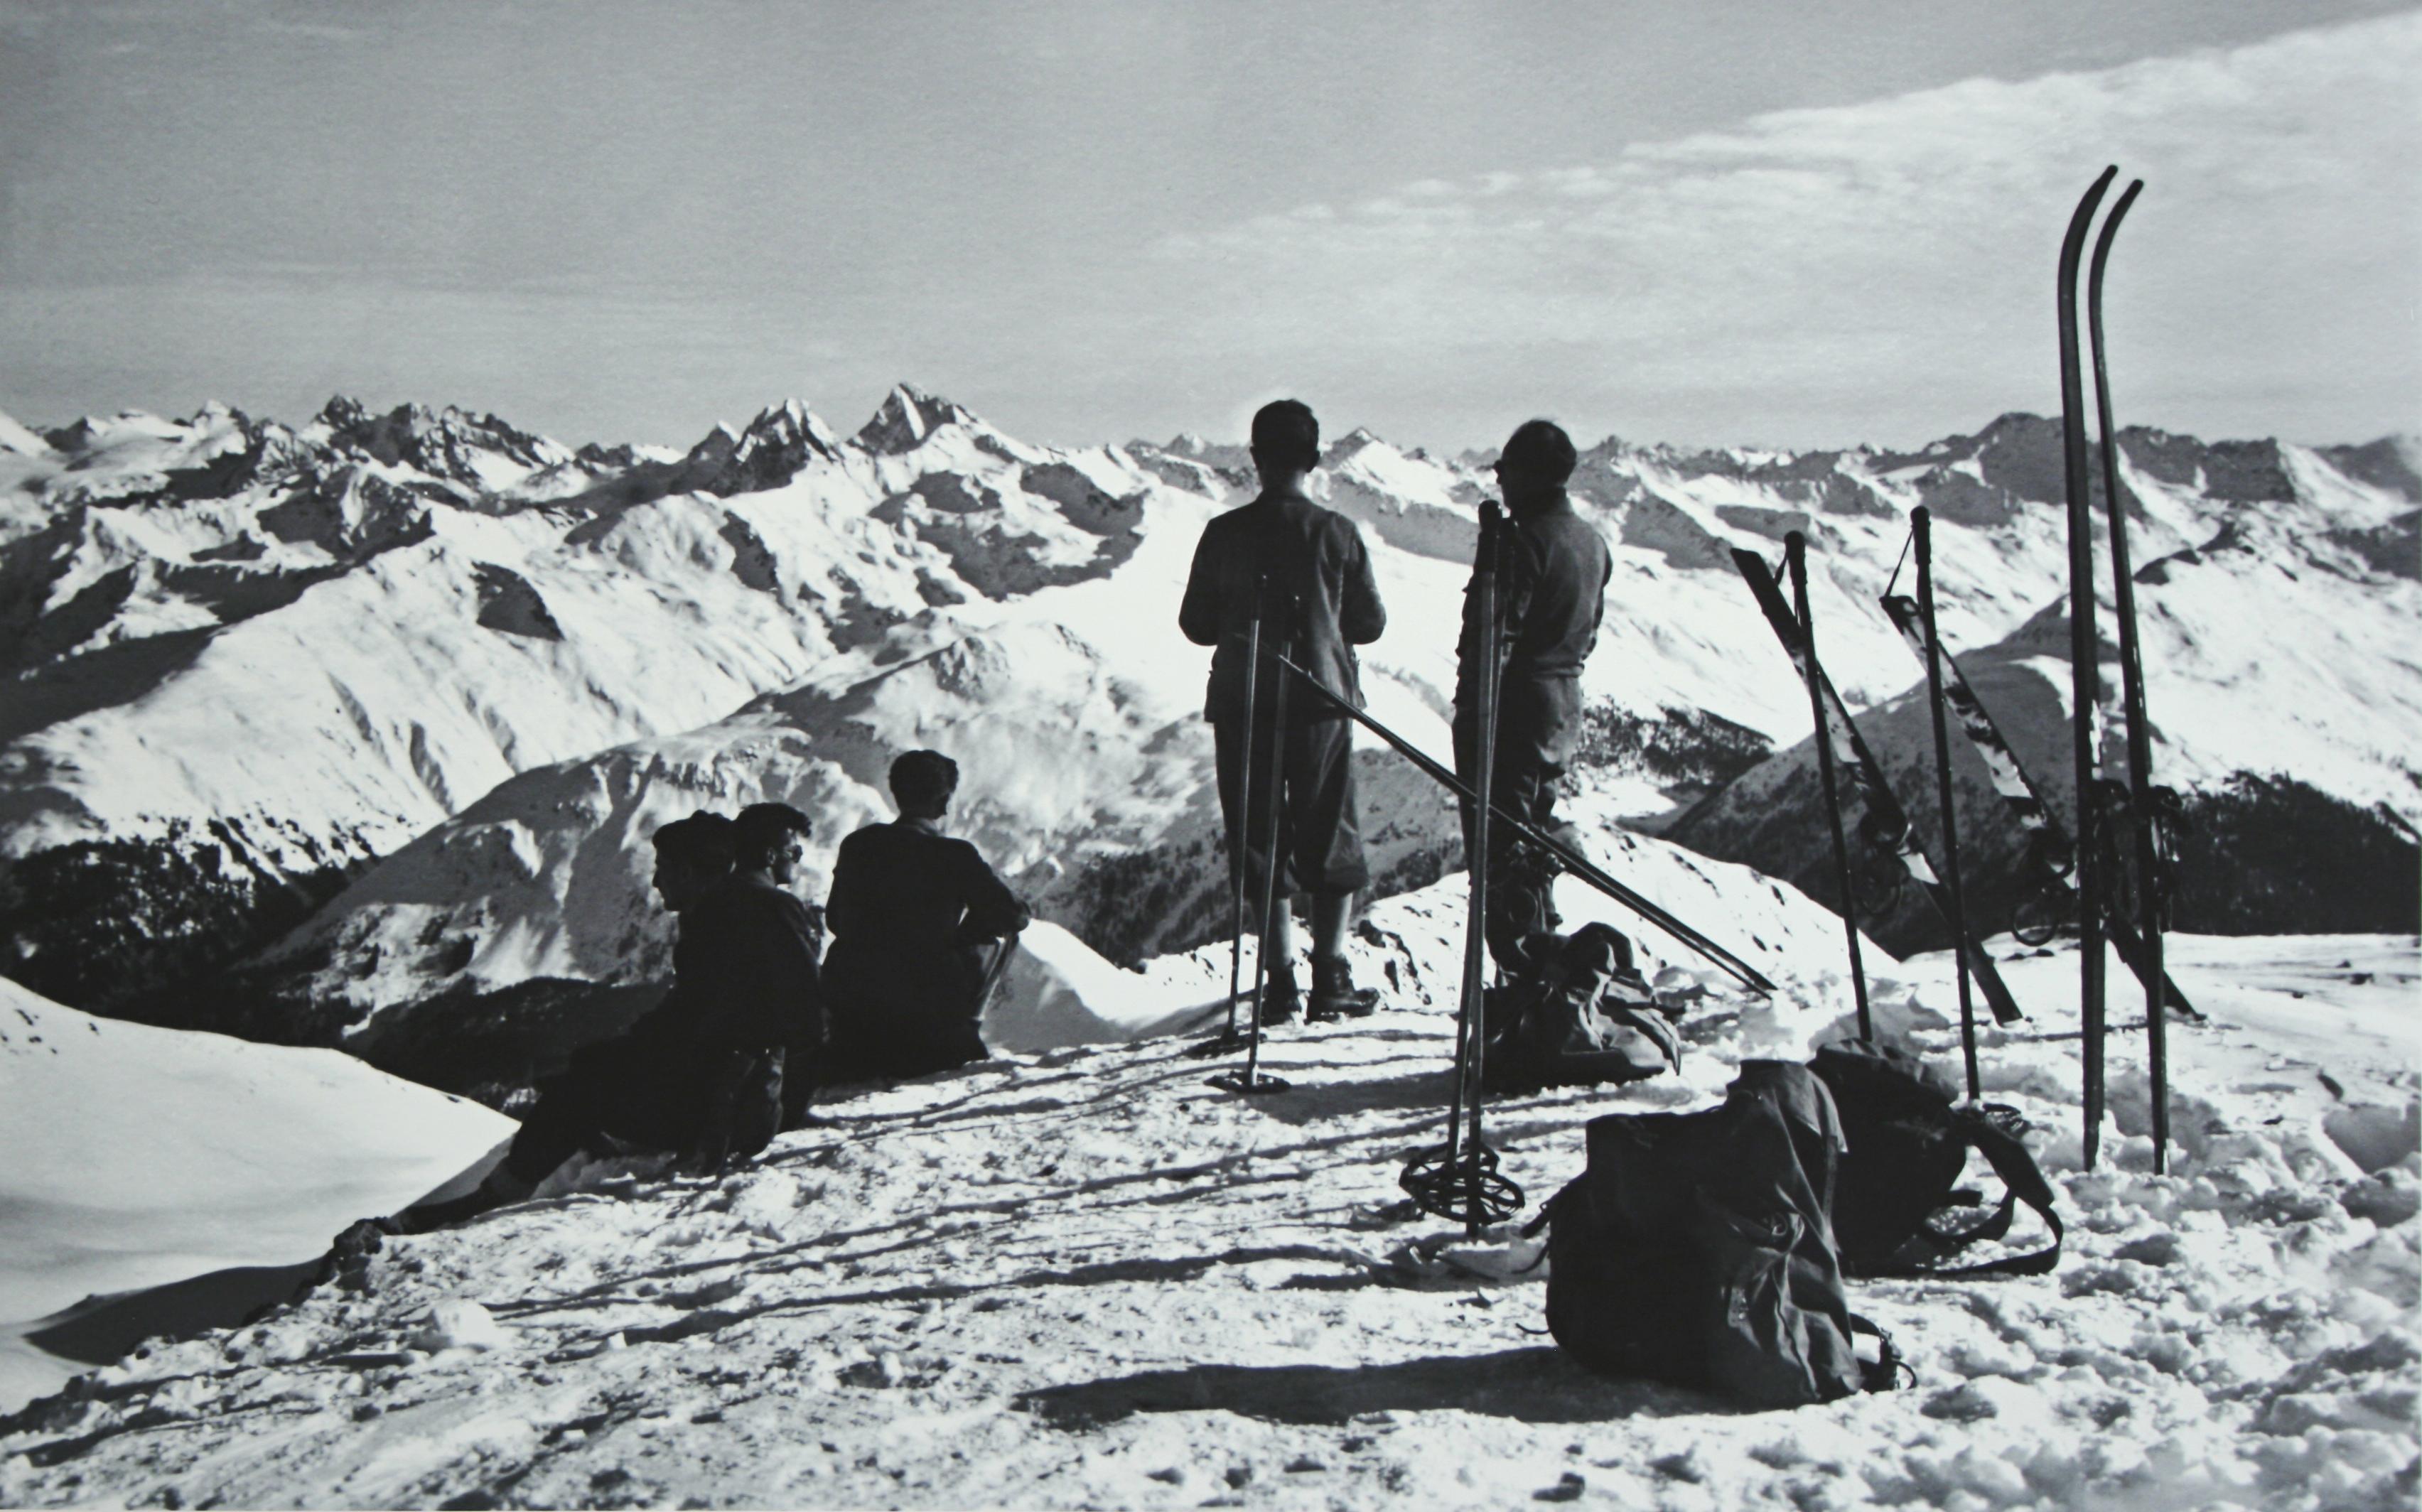 dAVOS, PARSENN', une nouvelle image photographique en noir et blanc montée d'après une photographie de ski originale des années 1930. Les photos alpines en noir et blanc sont le complément parfait à toute maison ou chalet de ski. N'hésitez pas à